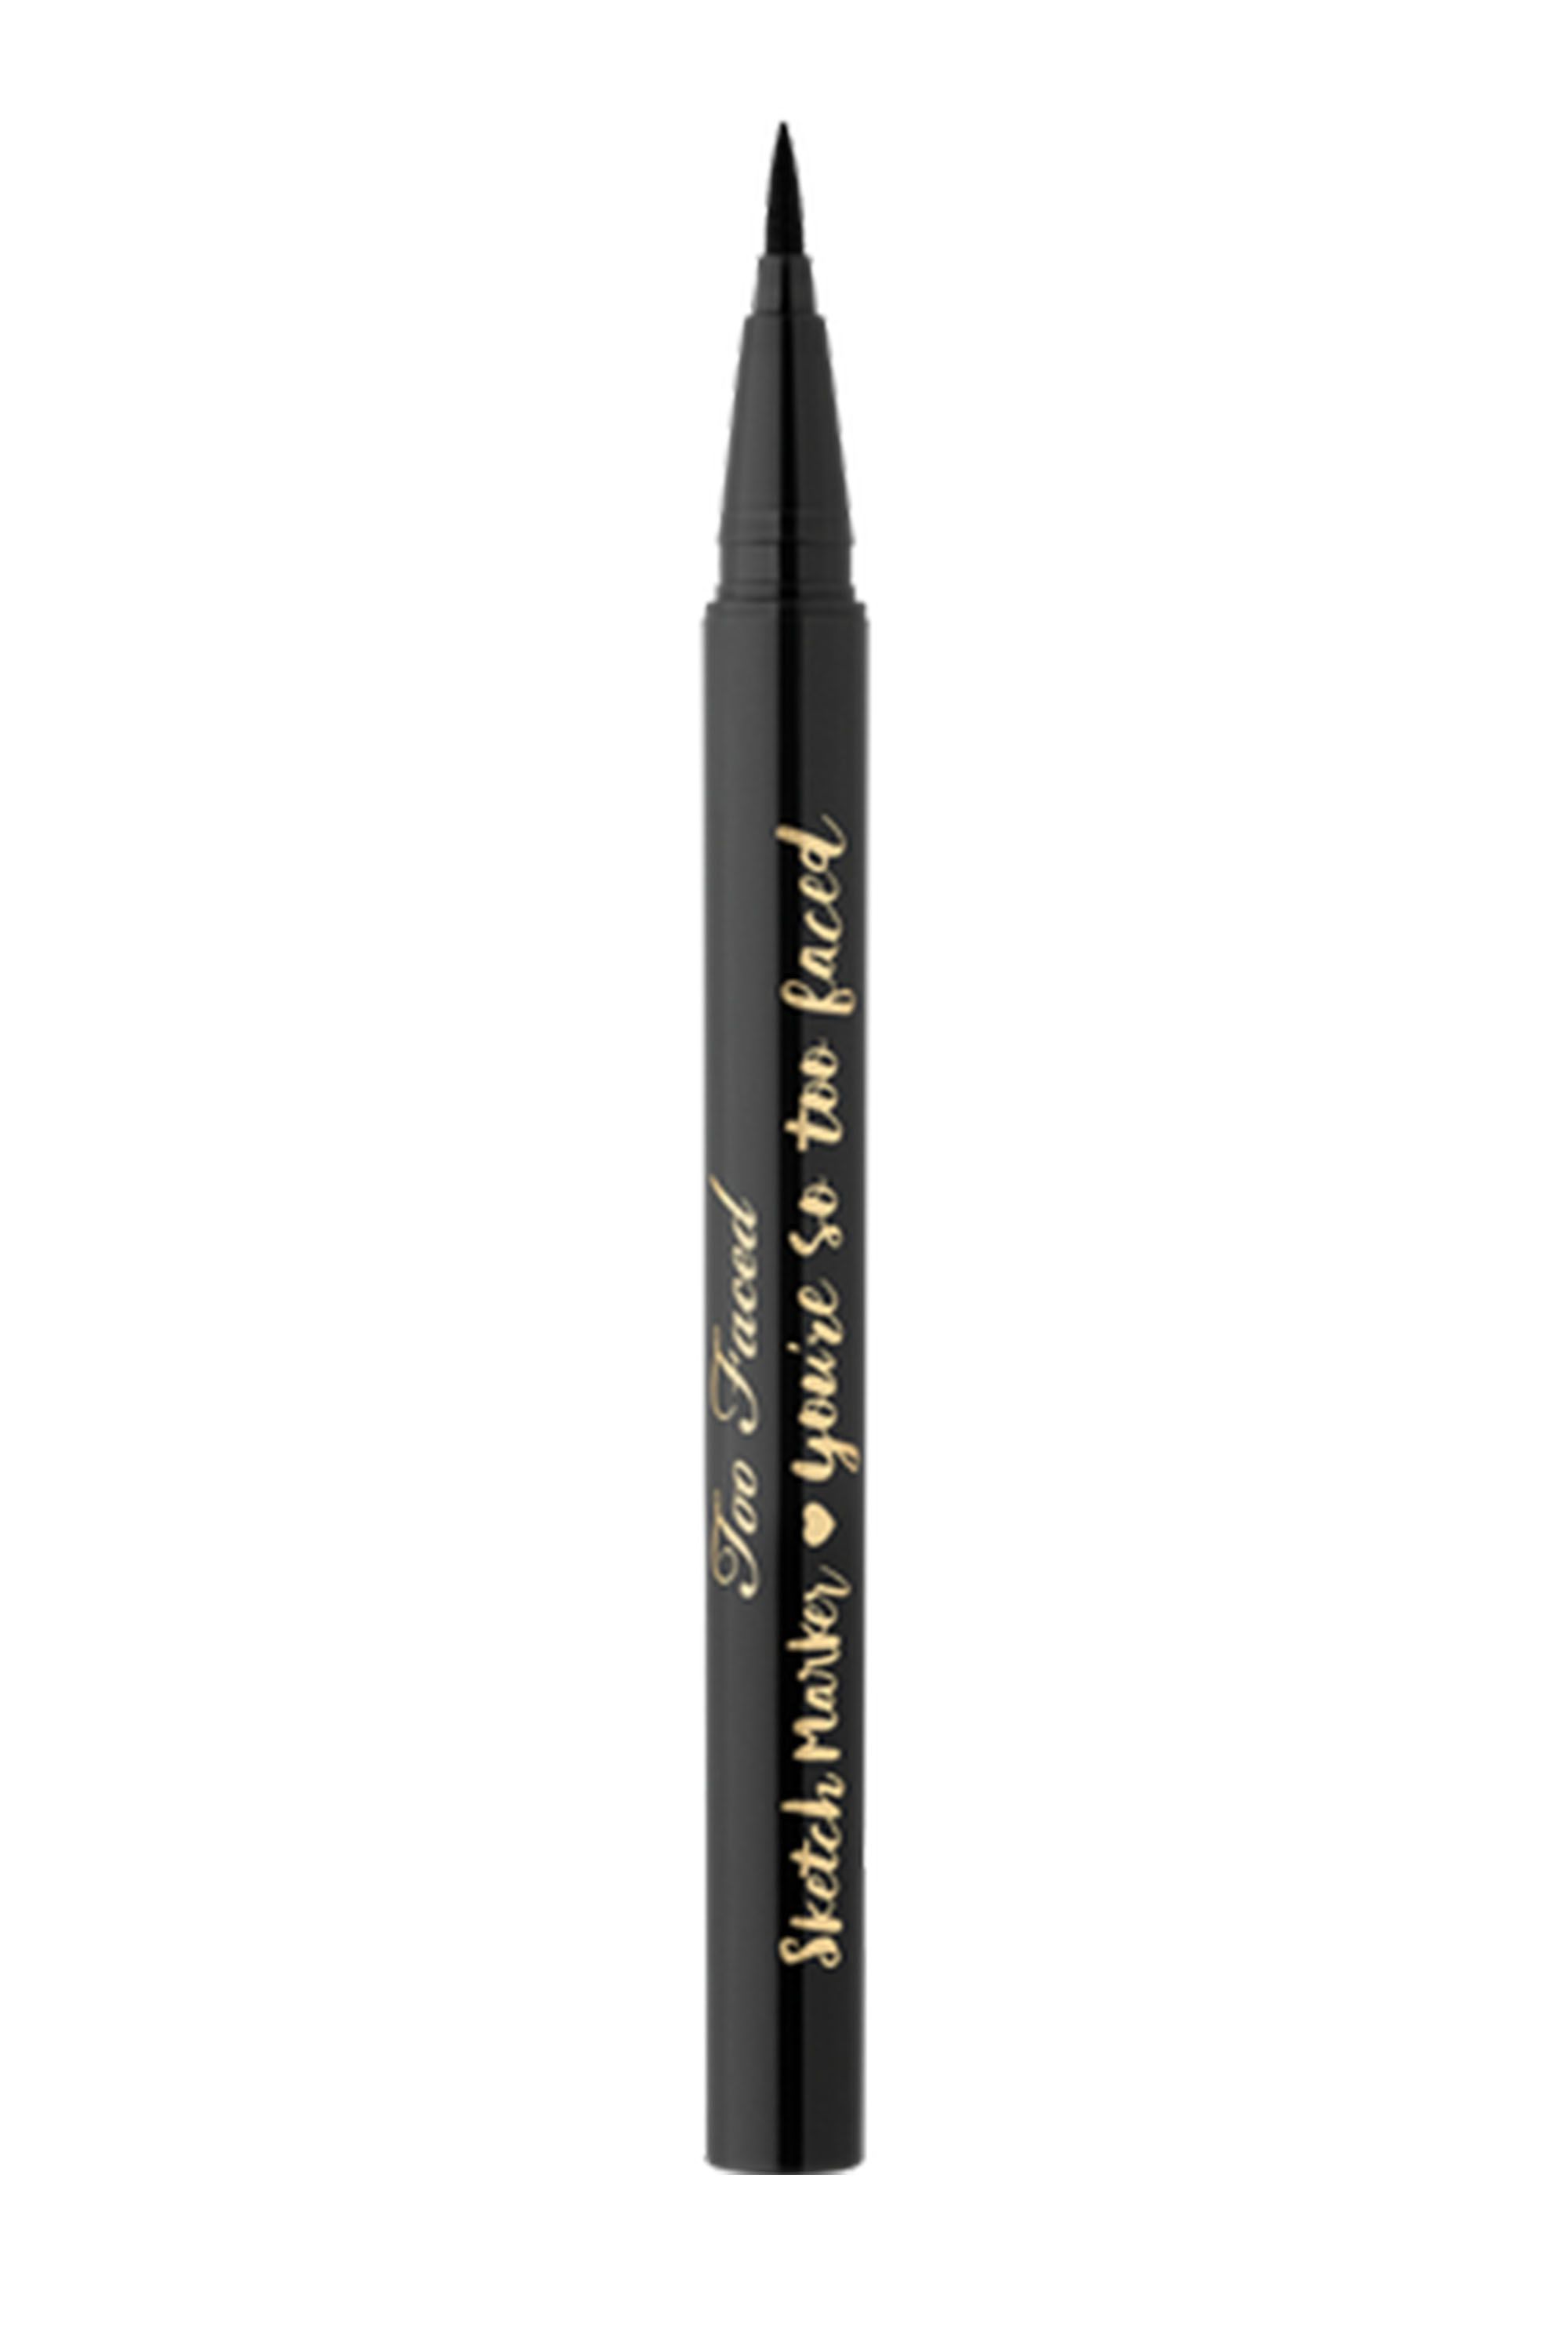 Best Waterproof Liquid Eyeliner Pen. Подводка фломастер Huda Beauty. Карандаш для глаз Waterproof Eyeliner "Impala". Park Waterproof Eyeliner Pencil.